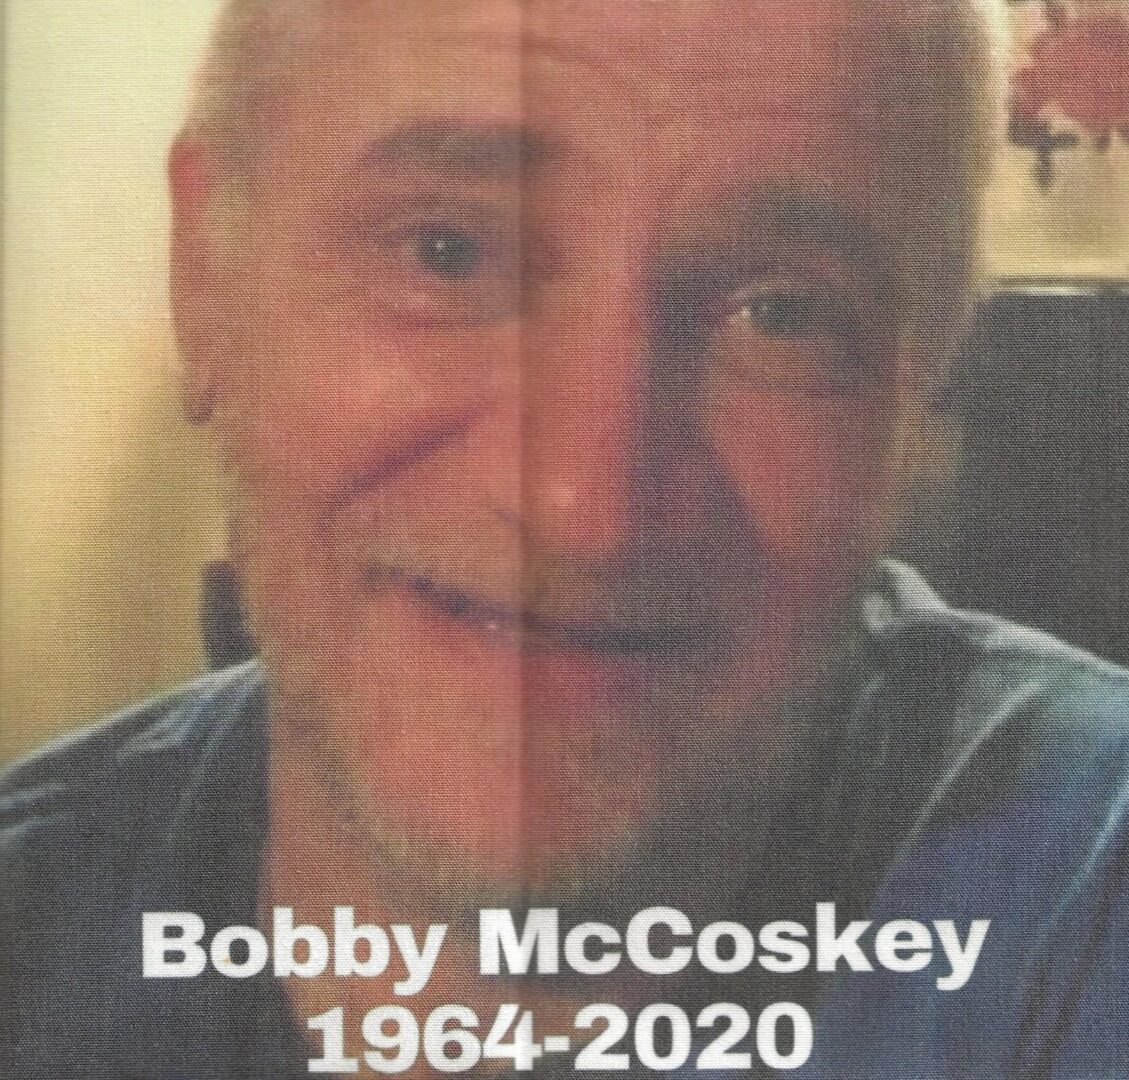 IN MEMORY OF BOBBY McCOSKEY